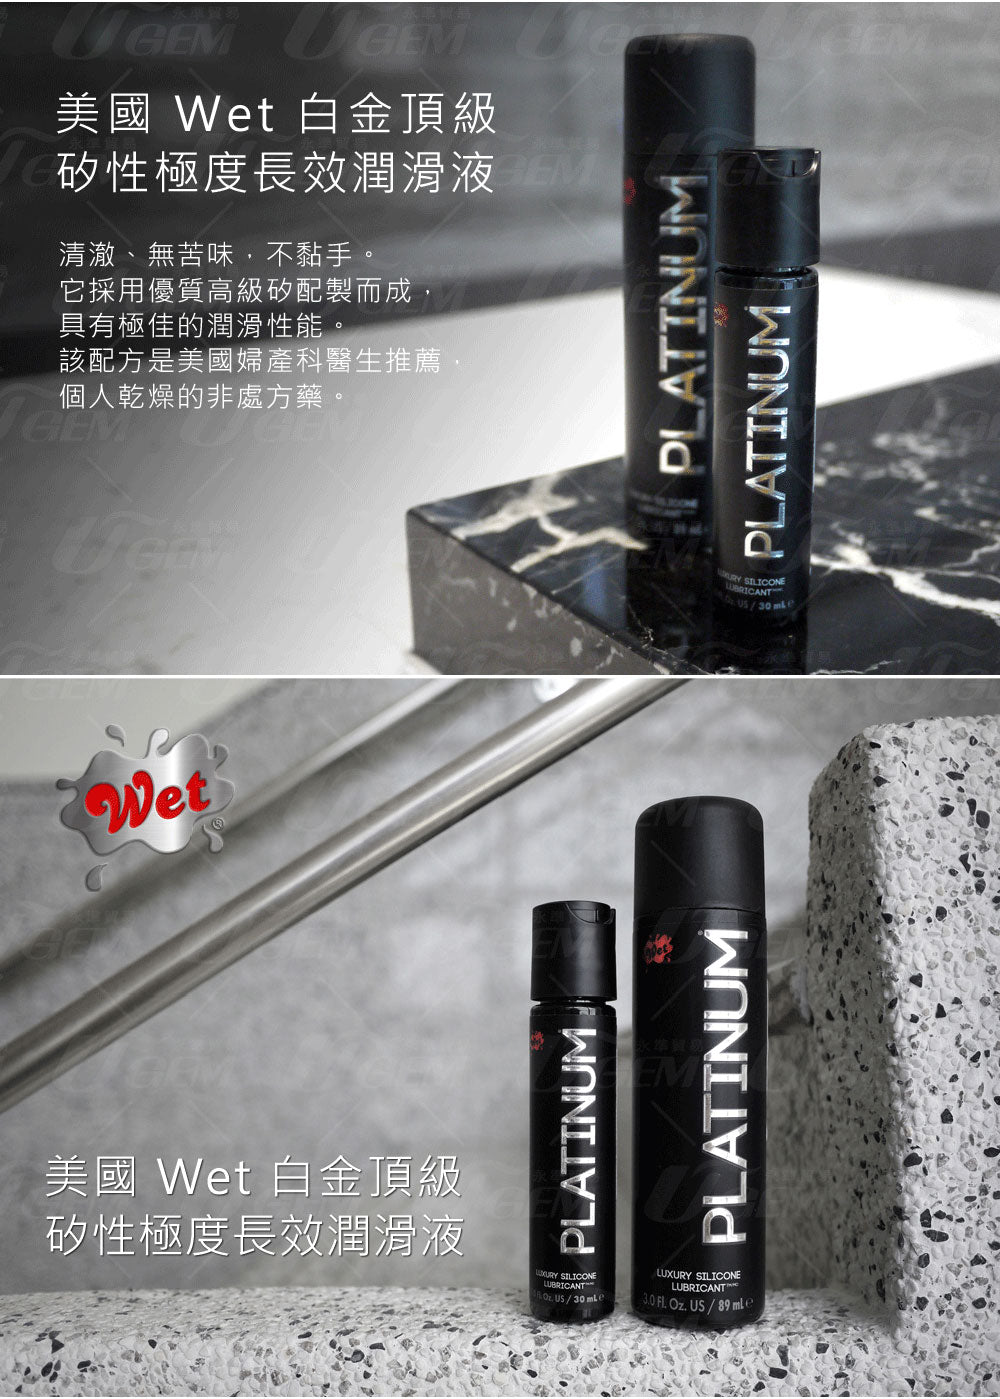 Wet 美國藥妝潤滑液第一品牌